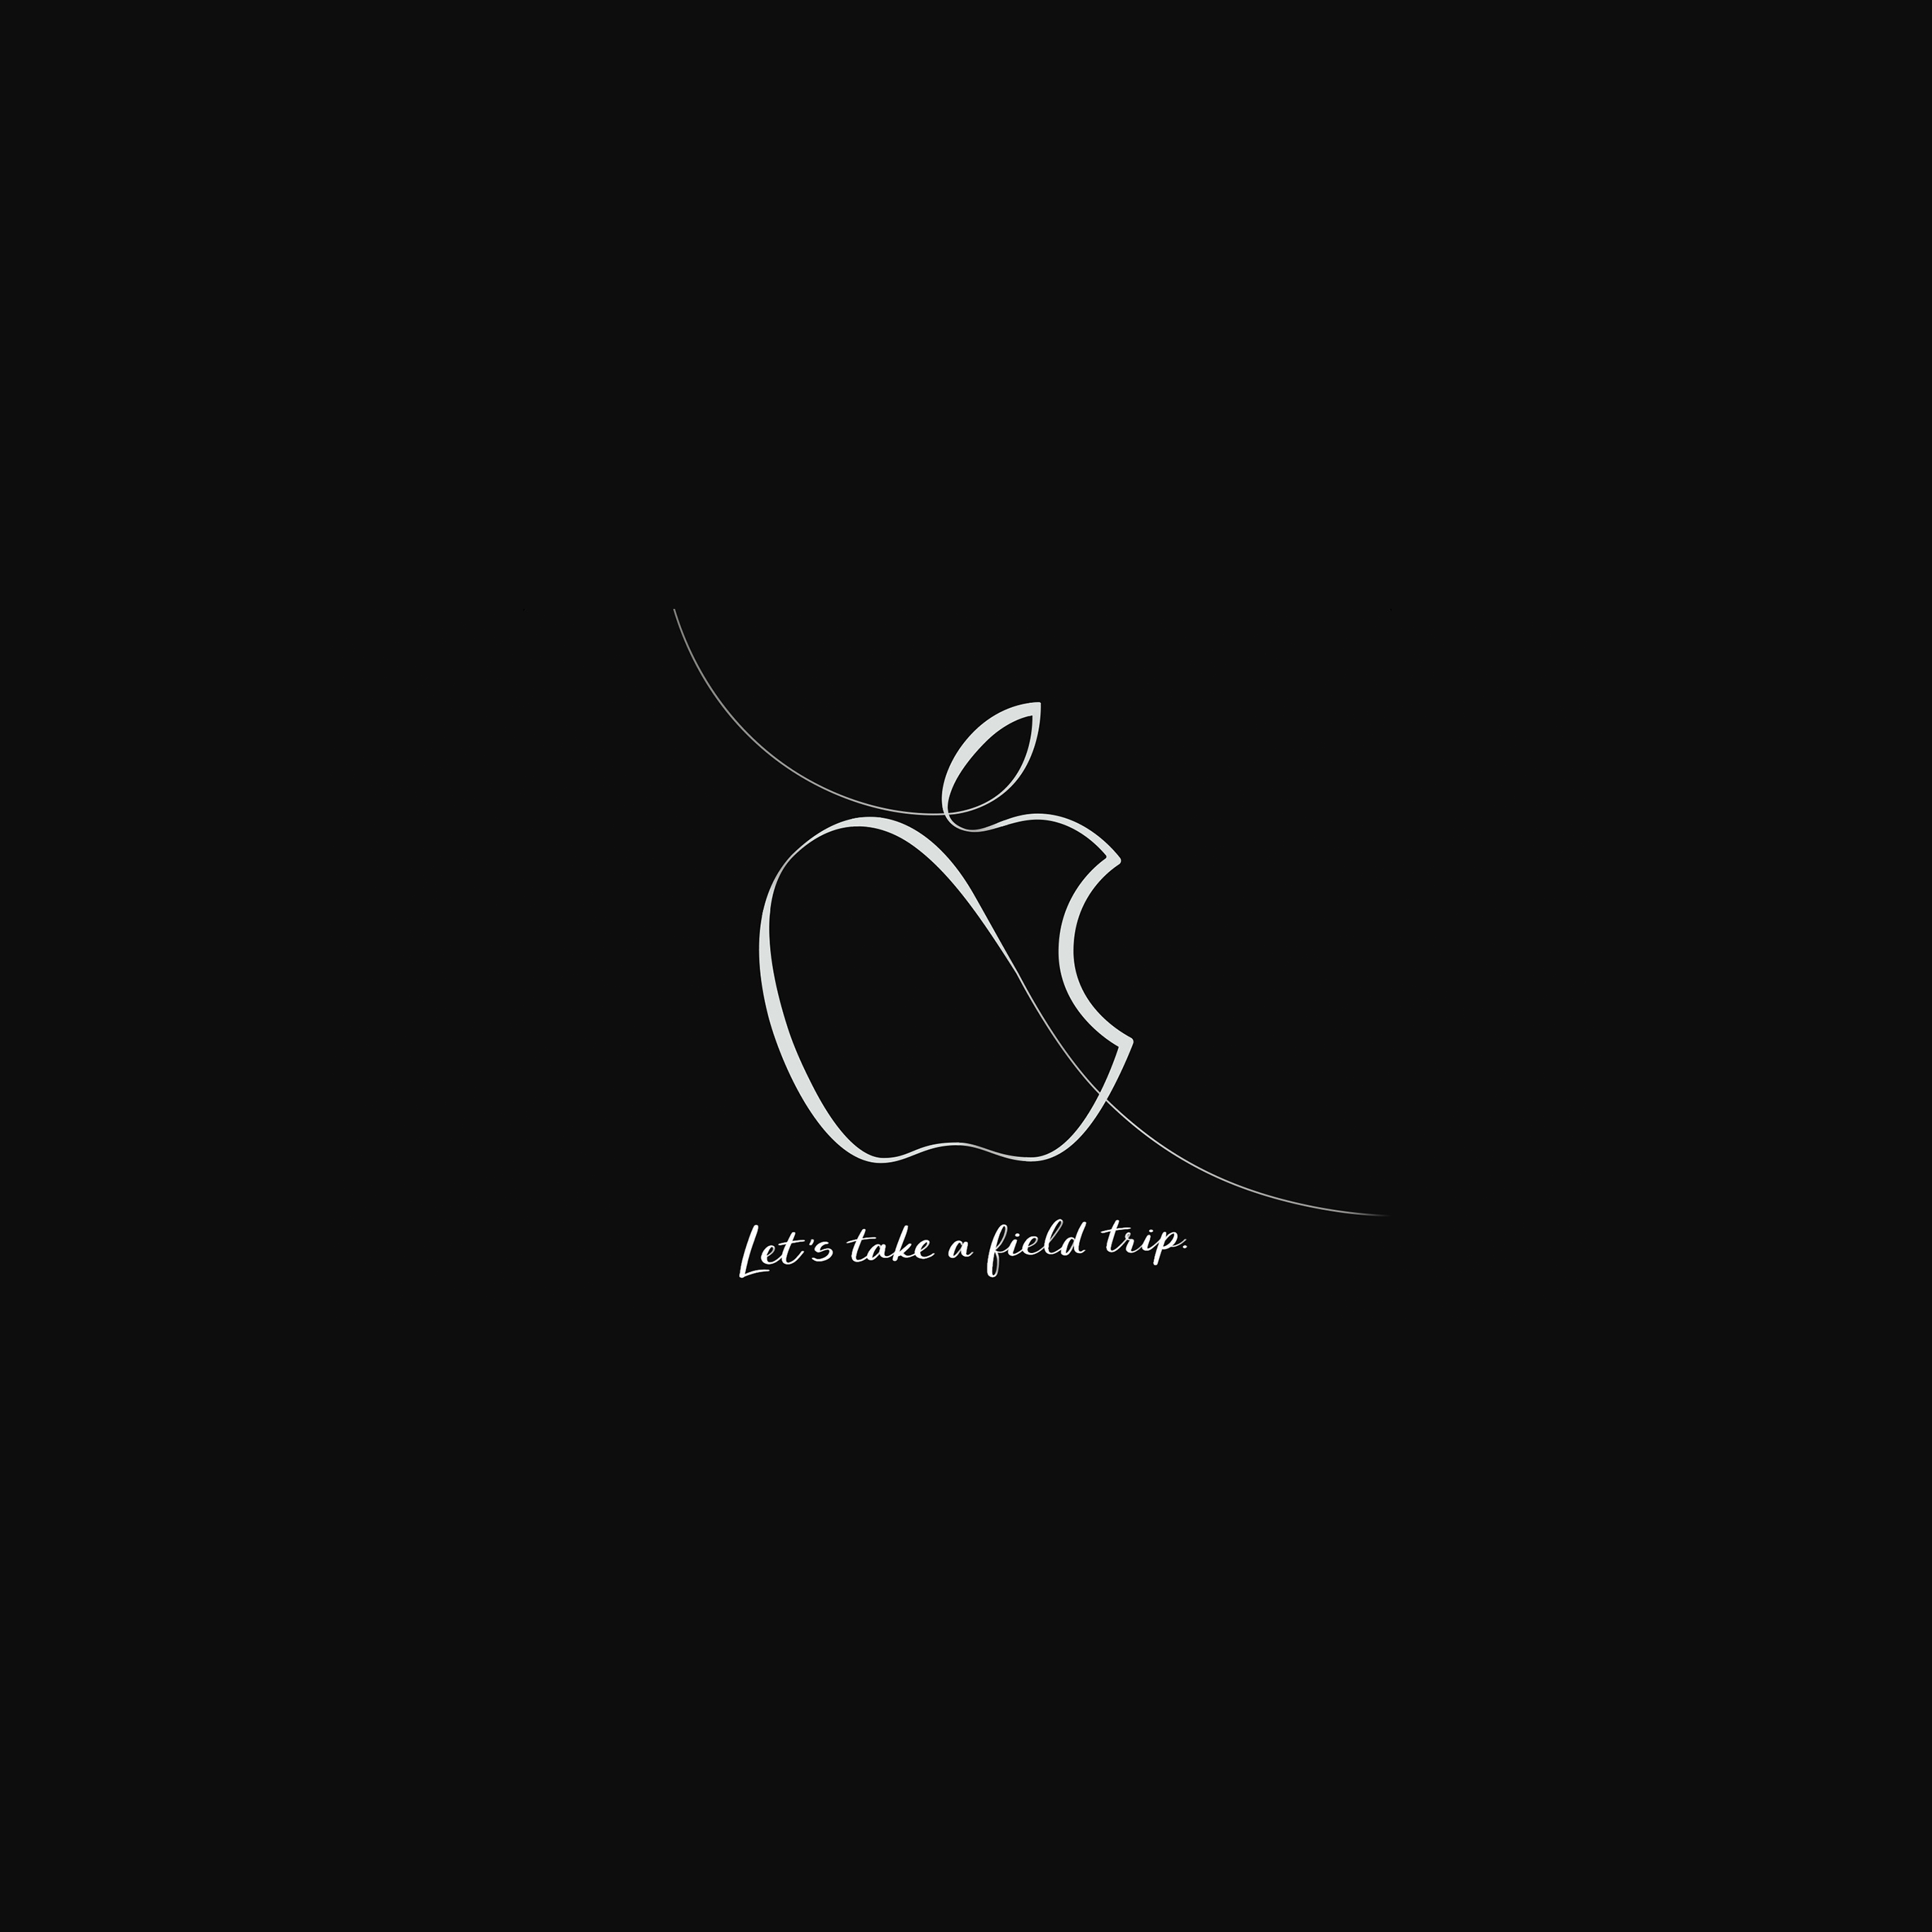 Appleのスペシャルイベント Let S Take A Field Trip のデザインをベースにした壁紙 Iphone Ipad Mac用 噂のappleフリークス